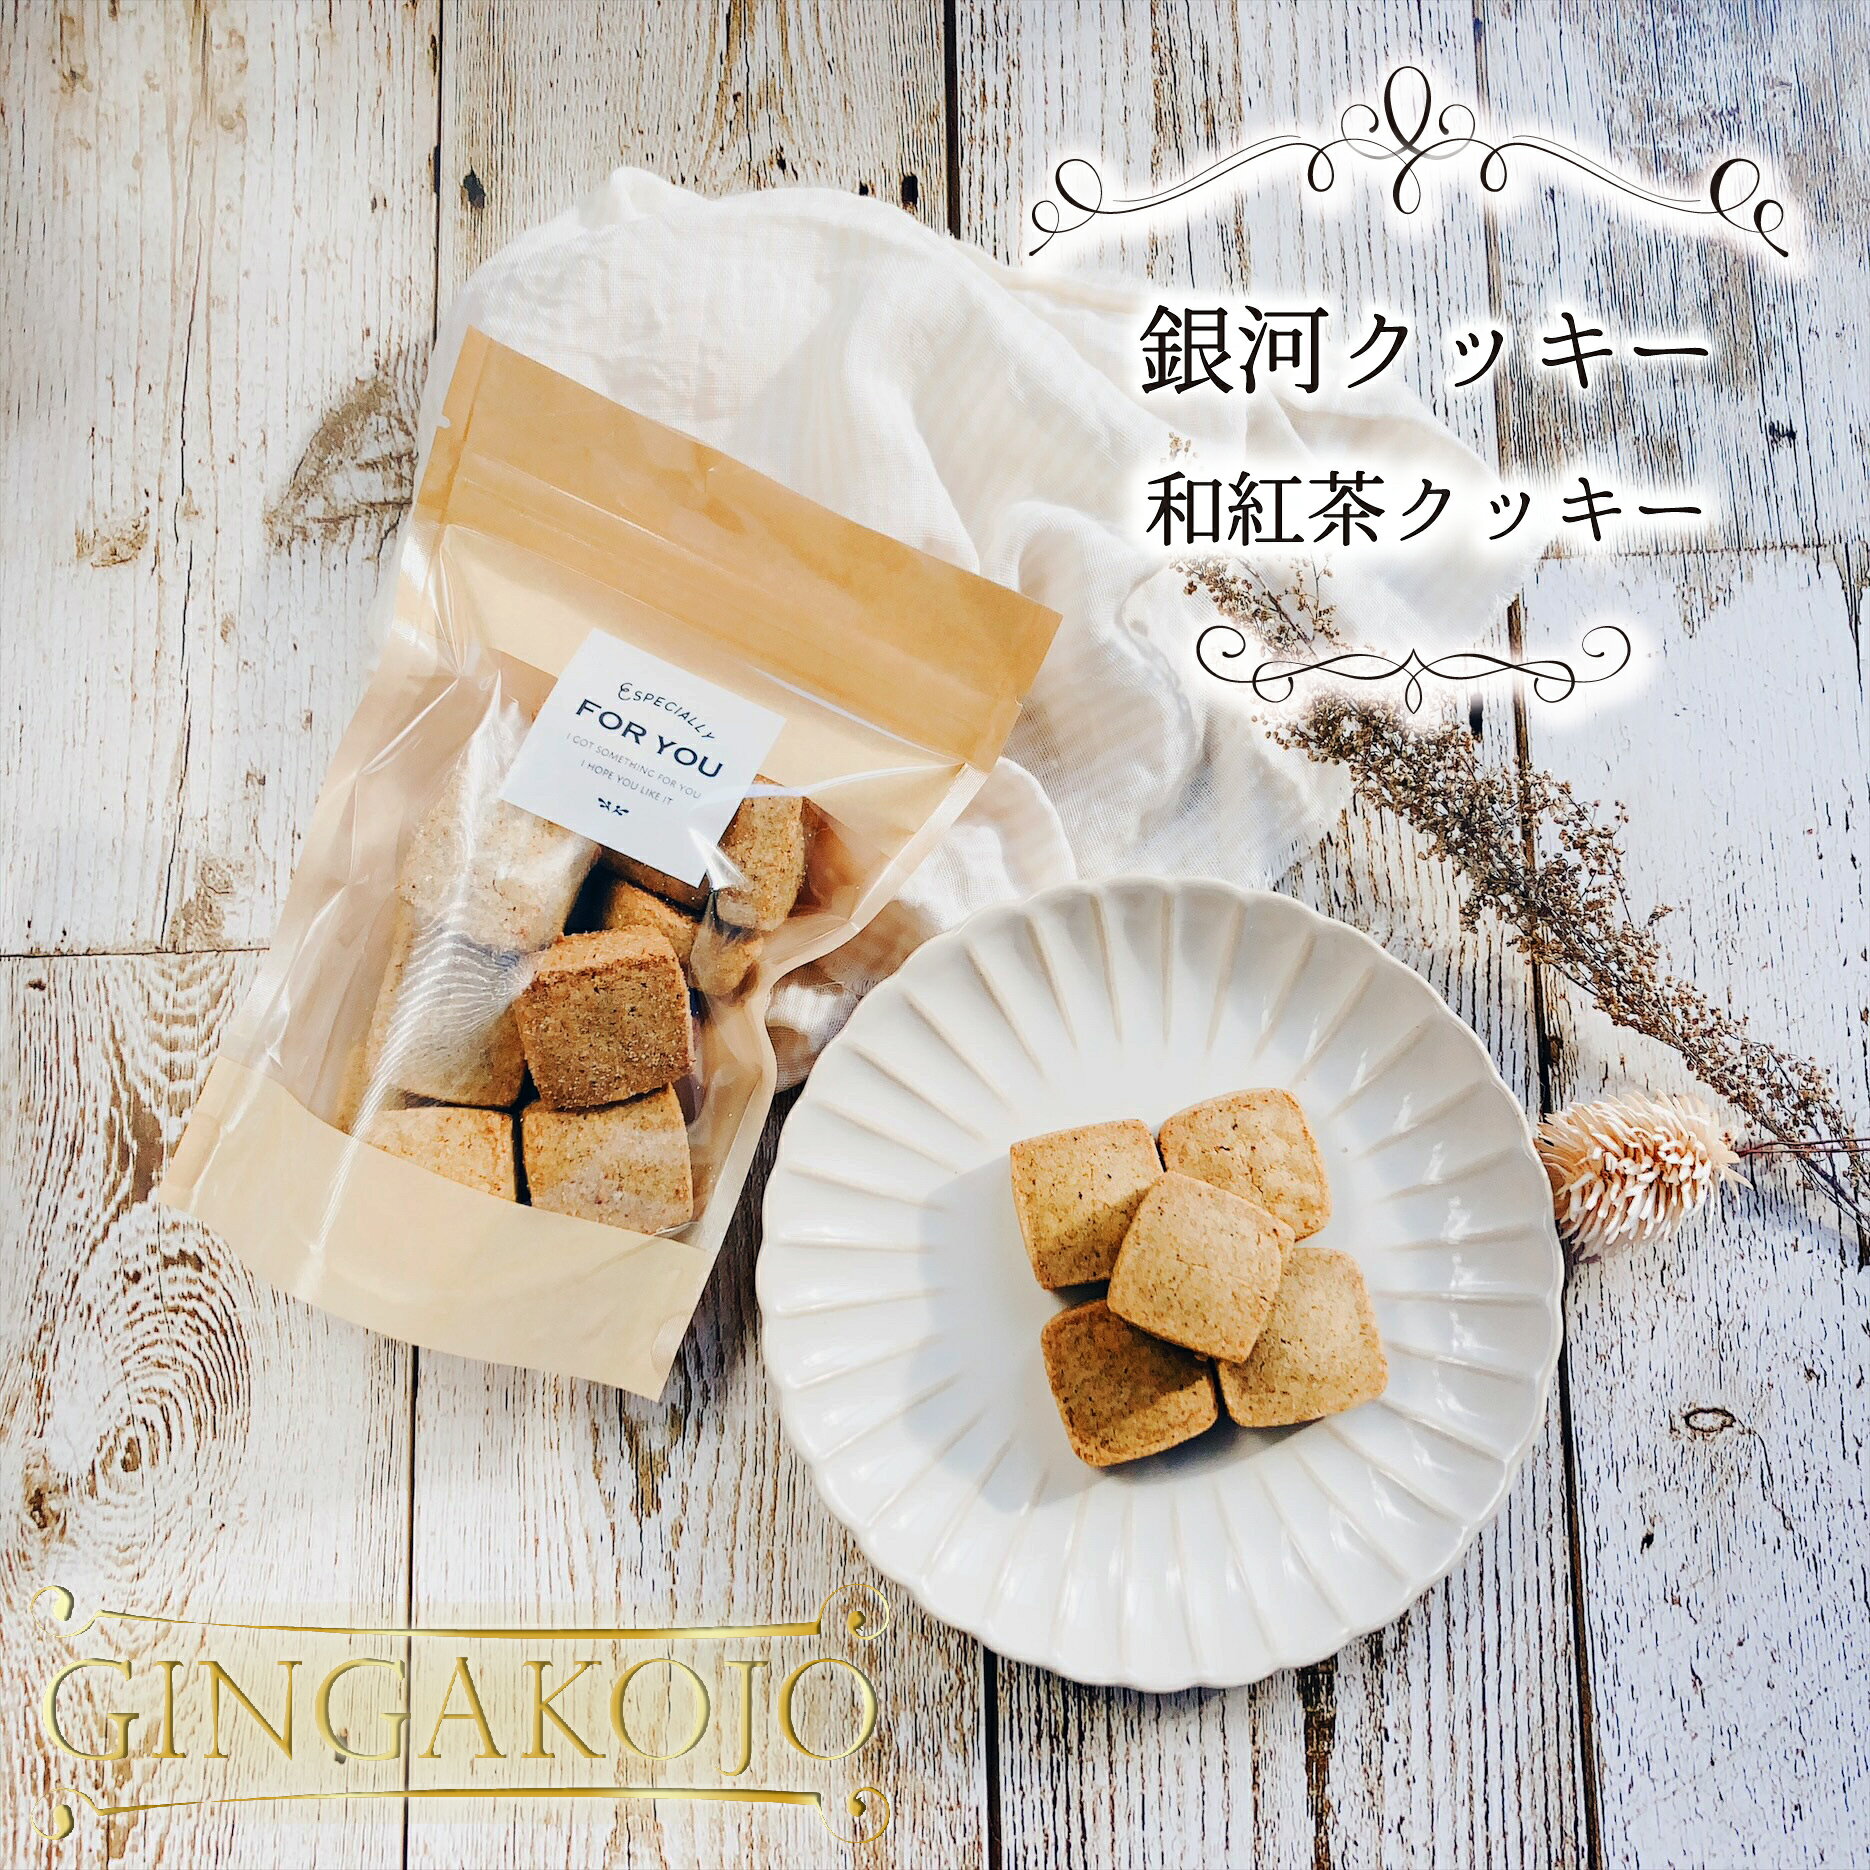 【お得用】銀河クッキー 和紅茶クッキー 袋入り ...の商品画像